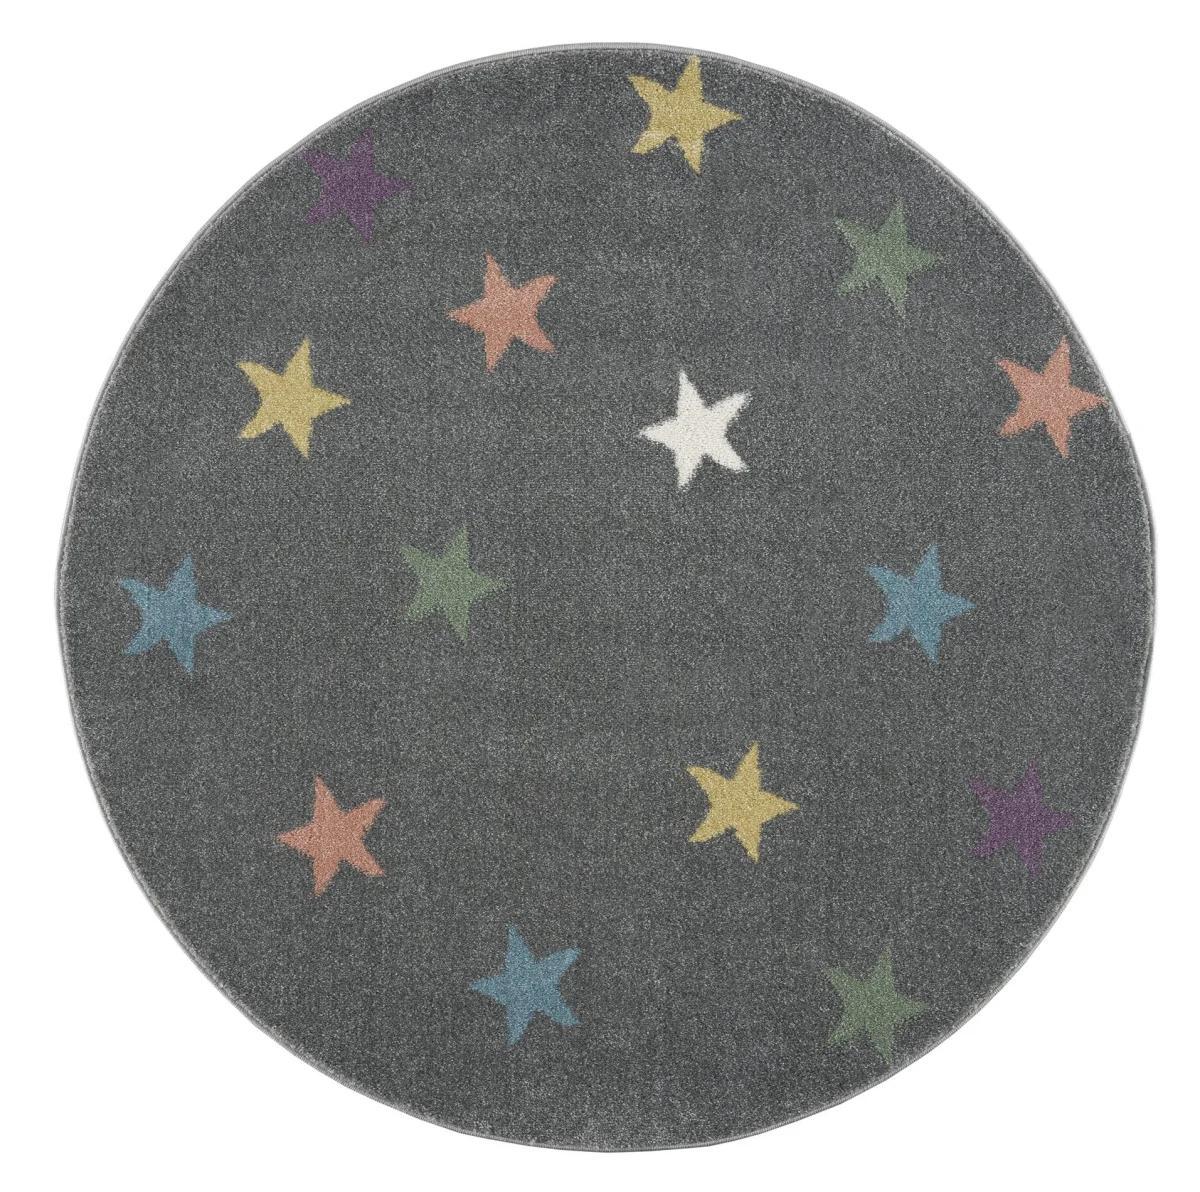 Dywan dziecięcy okrągły Violet Grey Round 160 cm do pokoju dziecięcego szary w gwiazdki nr. 2